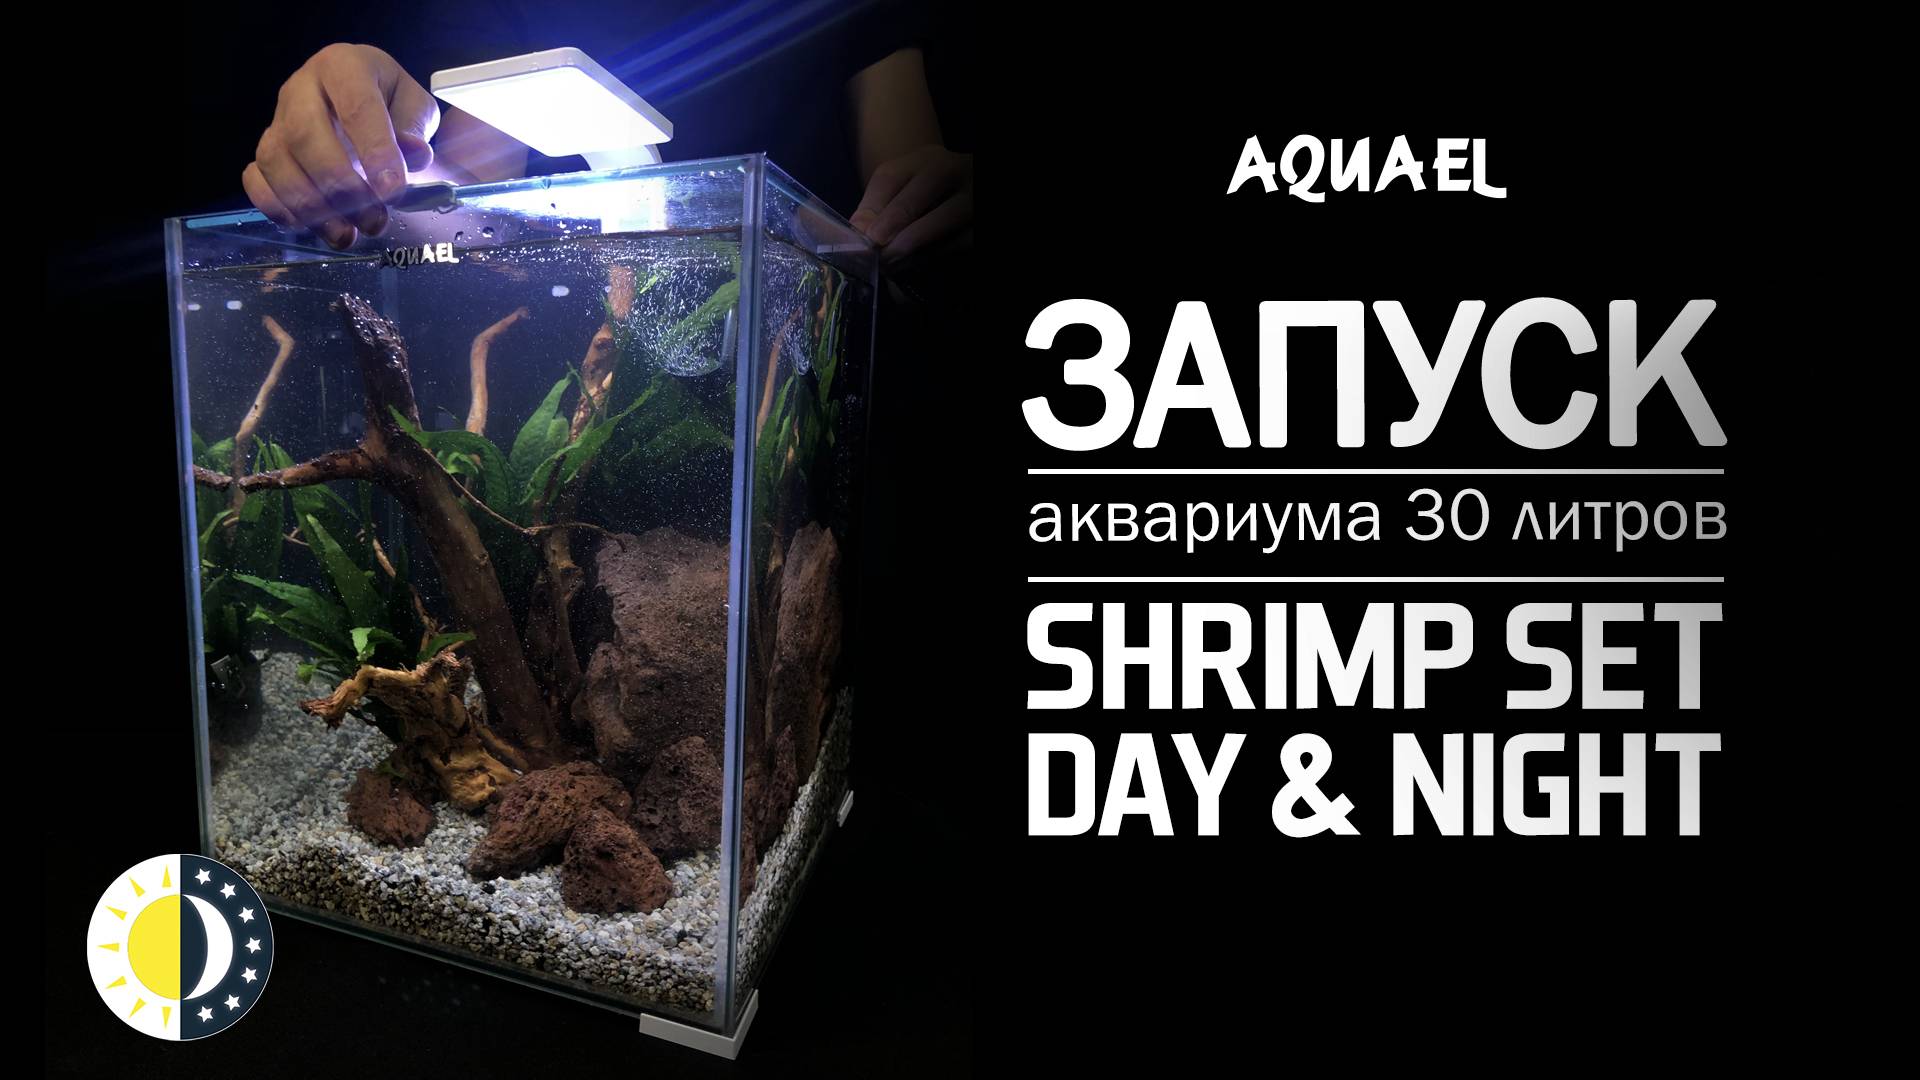 Оформление аквариума 30 литров AQUAEL SHRIMP SET DAY&NIGHT